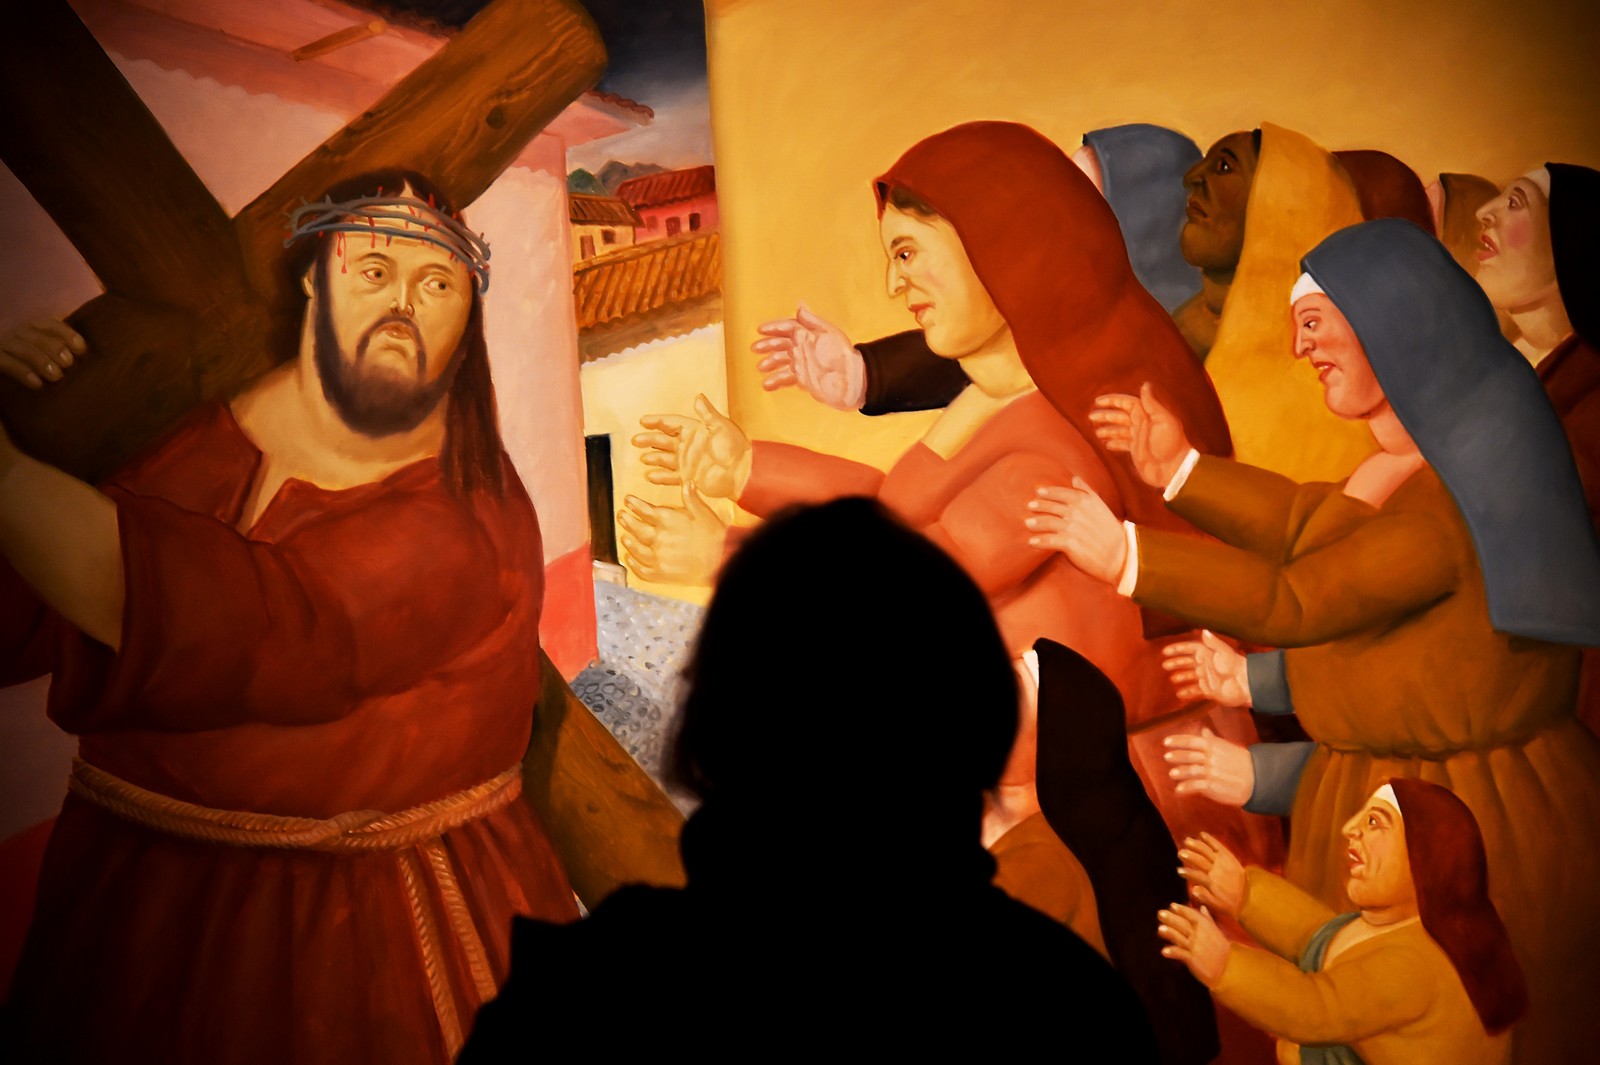 Magnífica exposición de la PASIÓN DE CRISTO, según Botero, en el Vaticano…